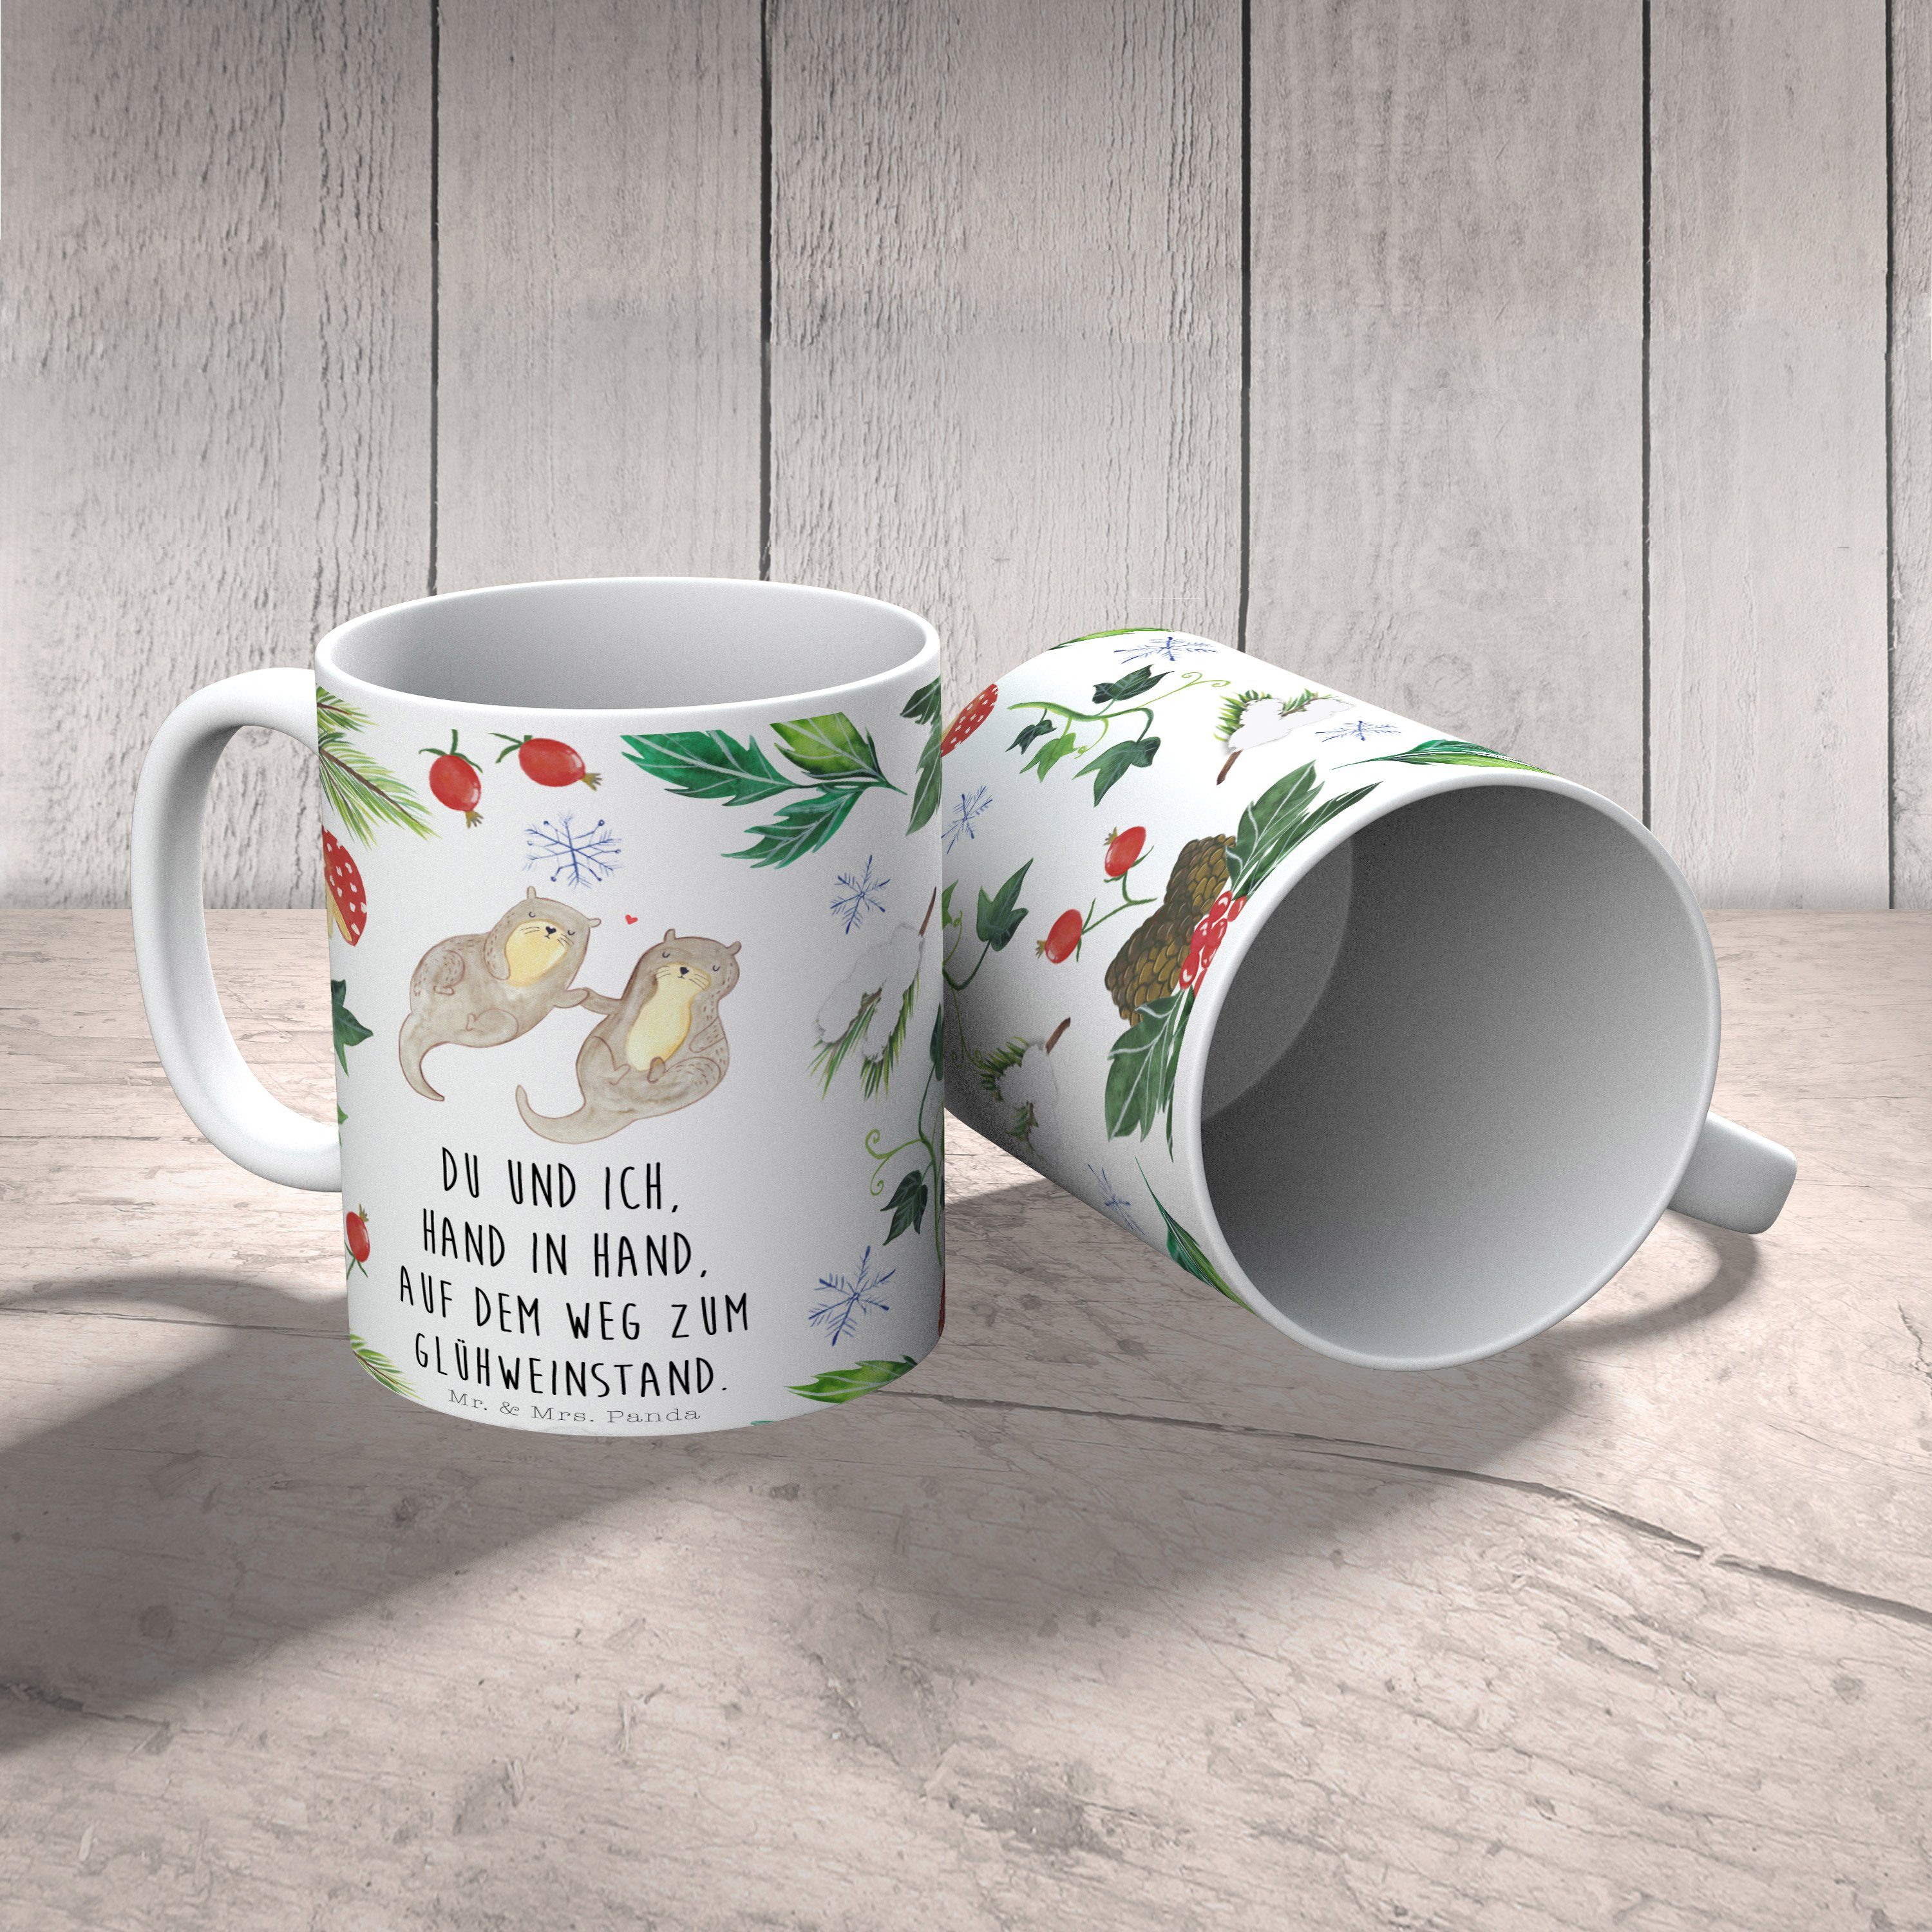 Mr. & Mrs. Panda Geschenk, - Otter - Winter, Tasse Weiß Weihnachtsdeko, Kaffee, Glühweinstand Keramik